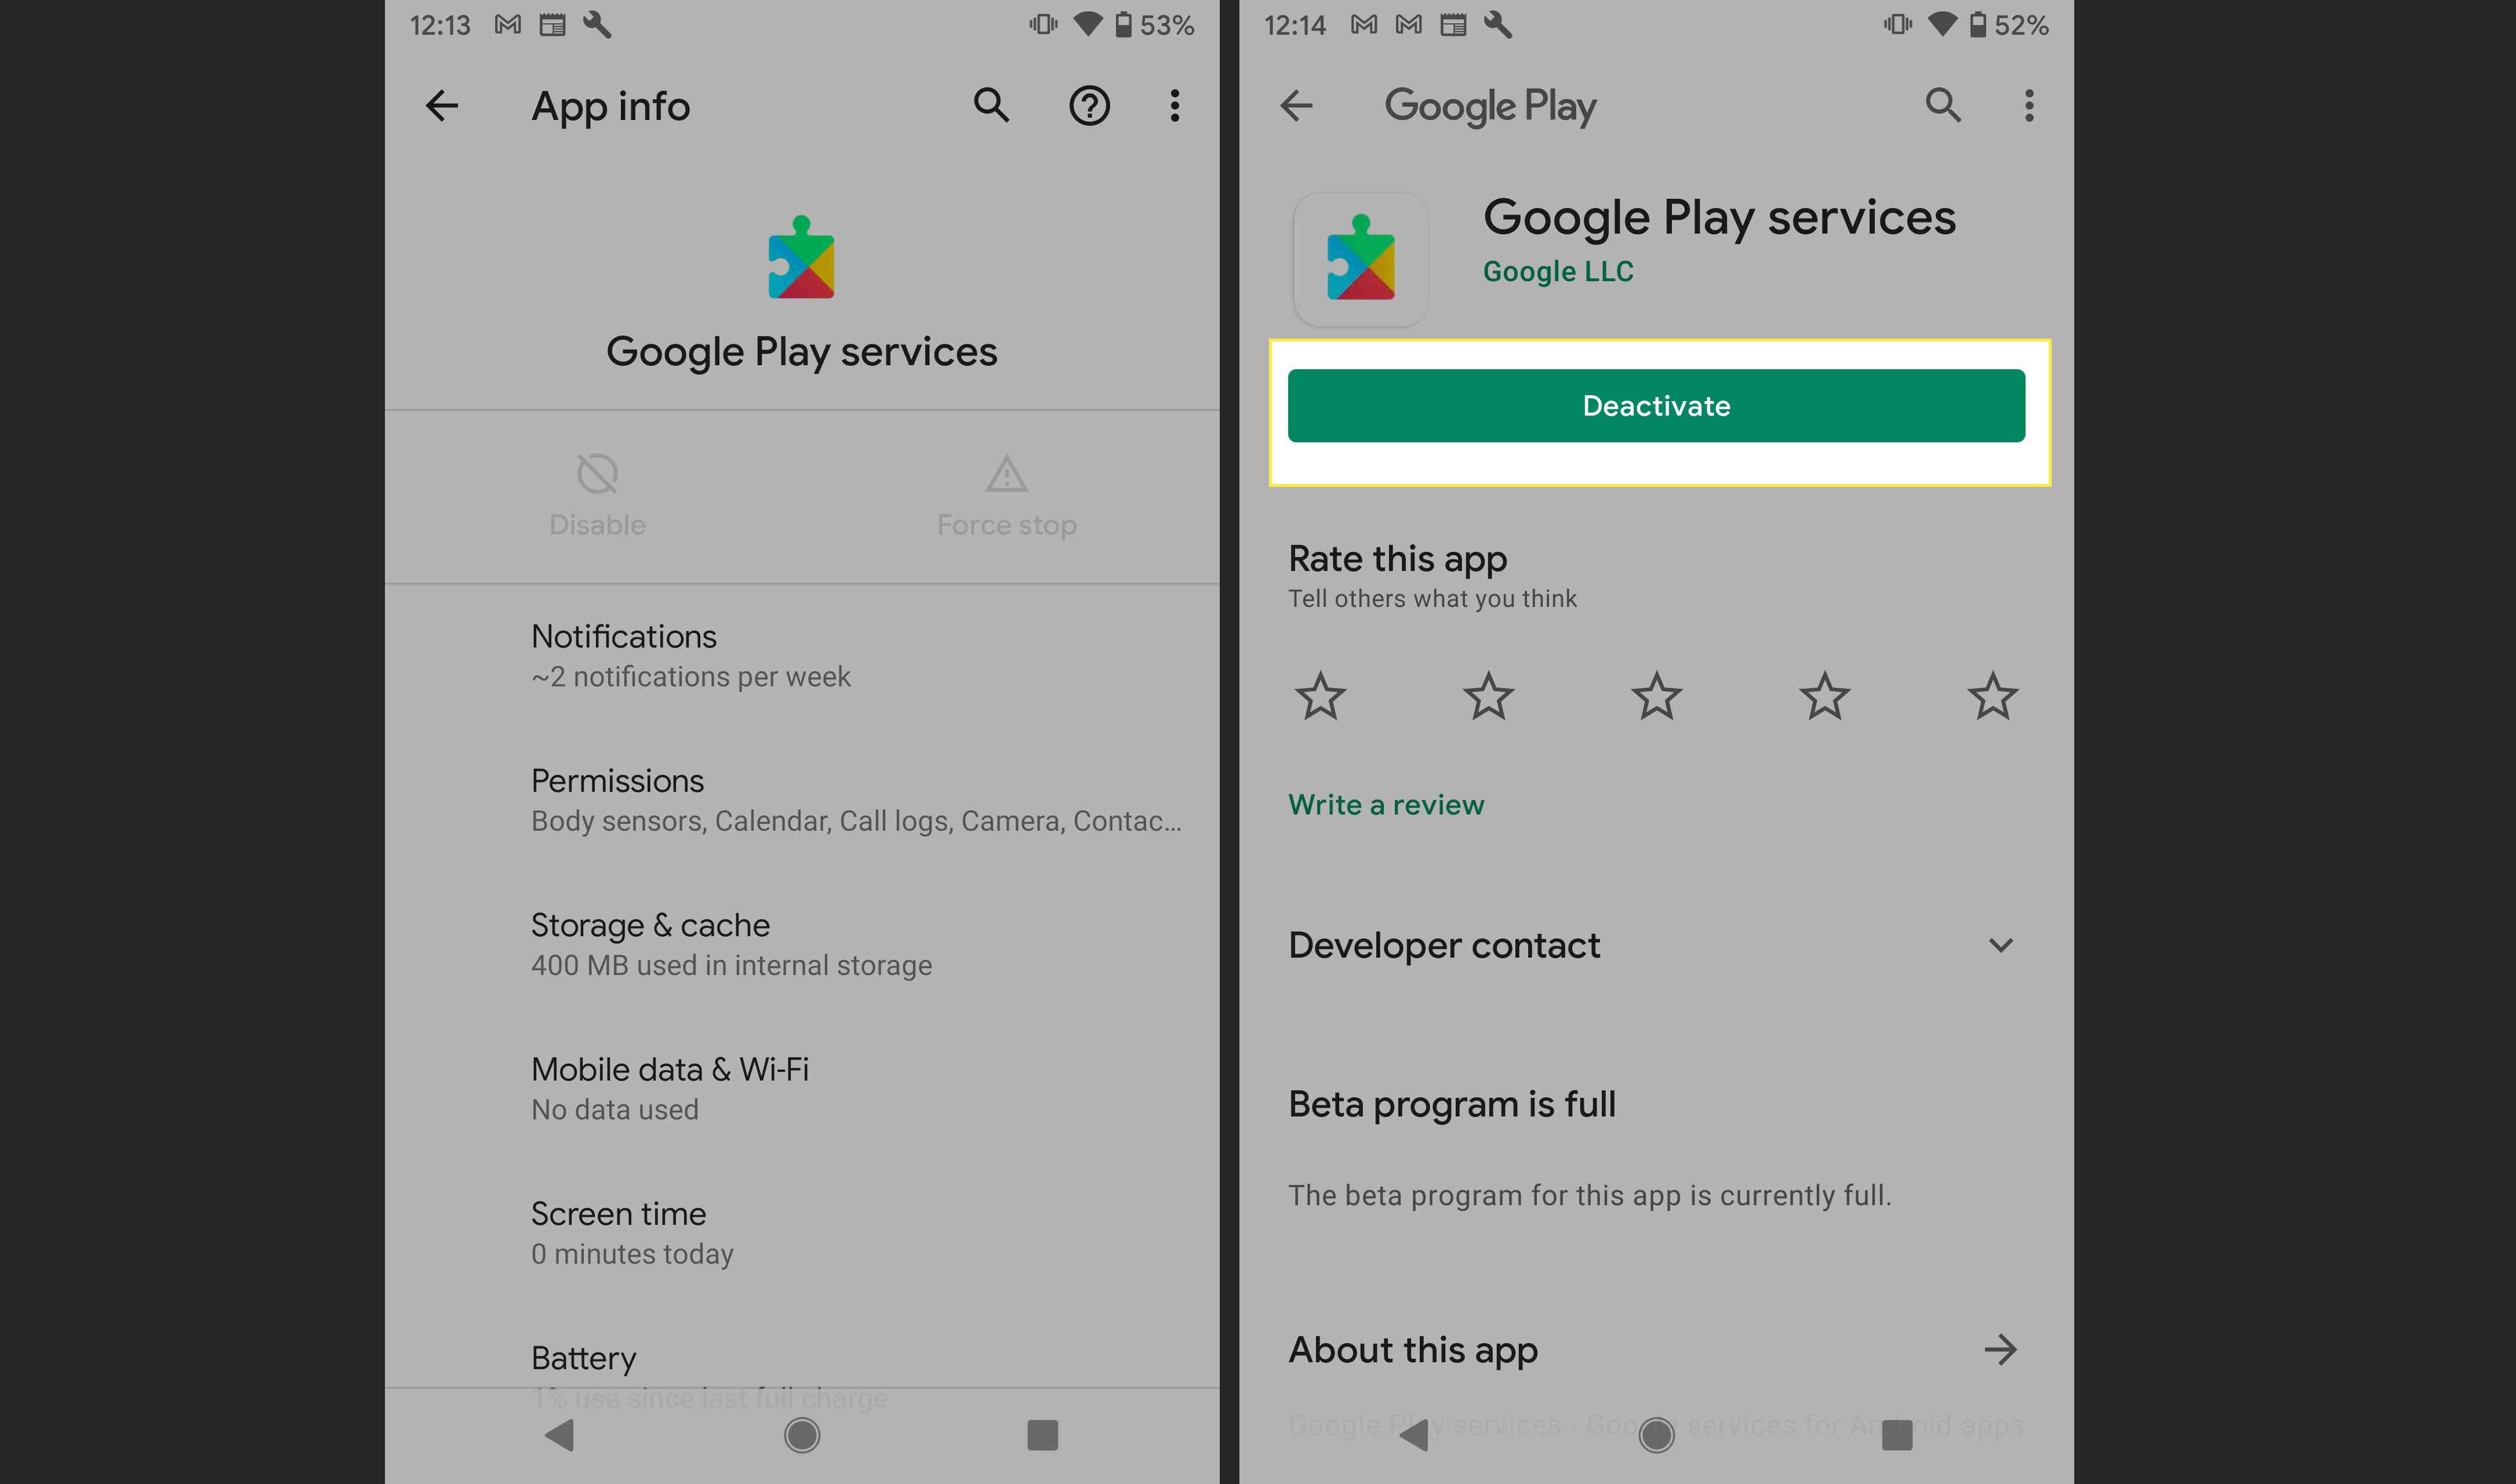 Додаток Служби Google Play на Android з підсвічуванням Деактивувати